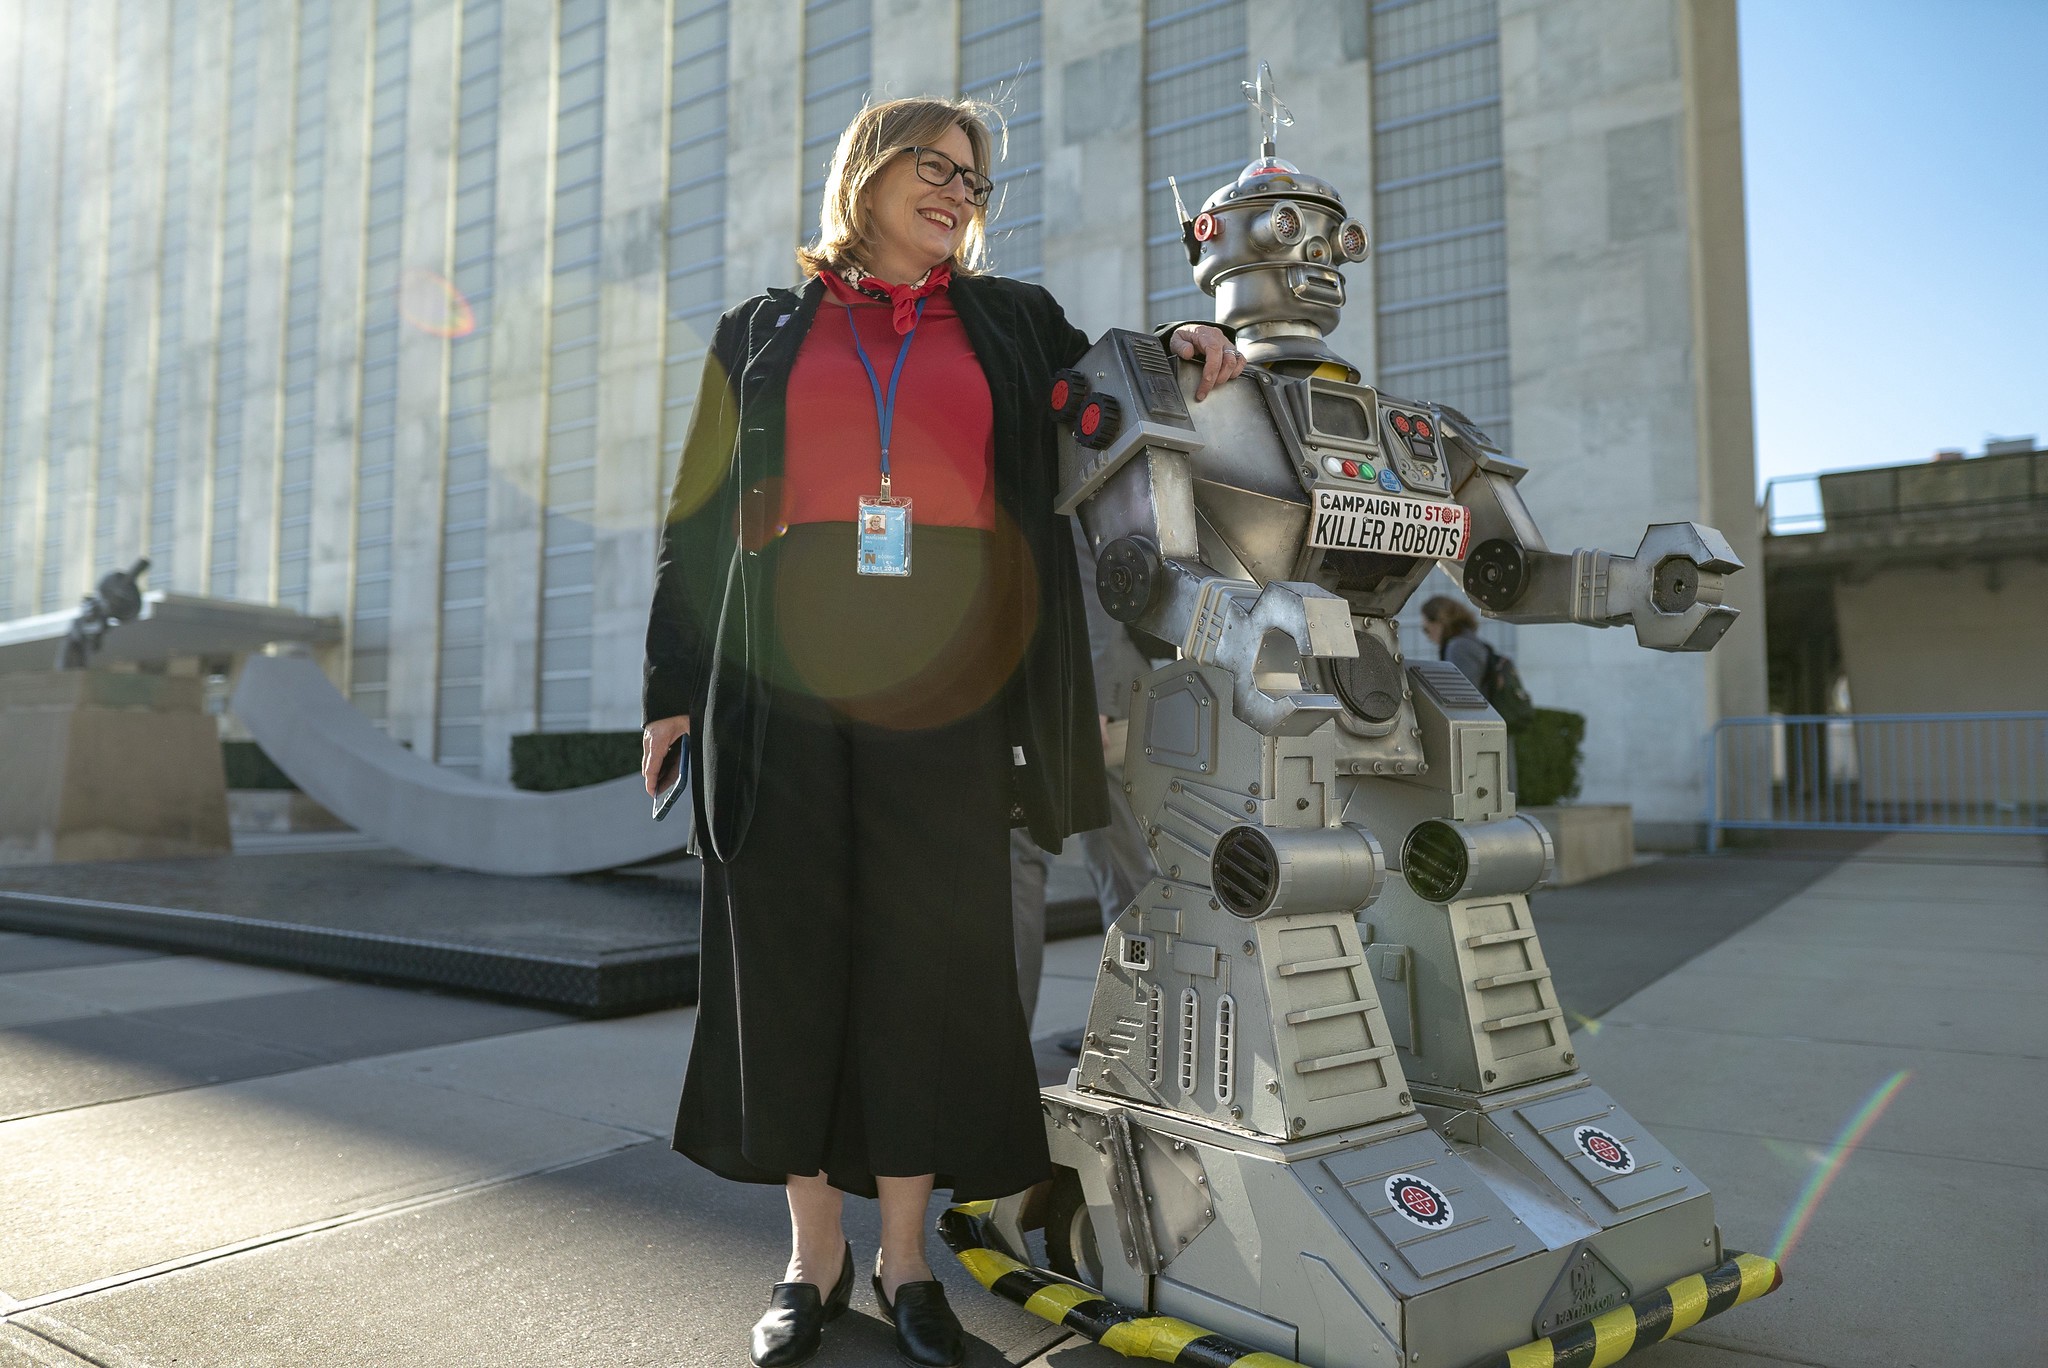 Mary Wareham posa con la mano en el hombro del robot de la Campaña frente al edificio de la ONU con el sol detrás de ellos.